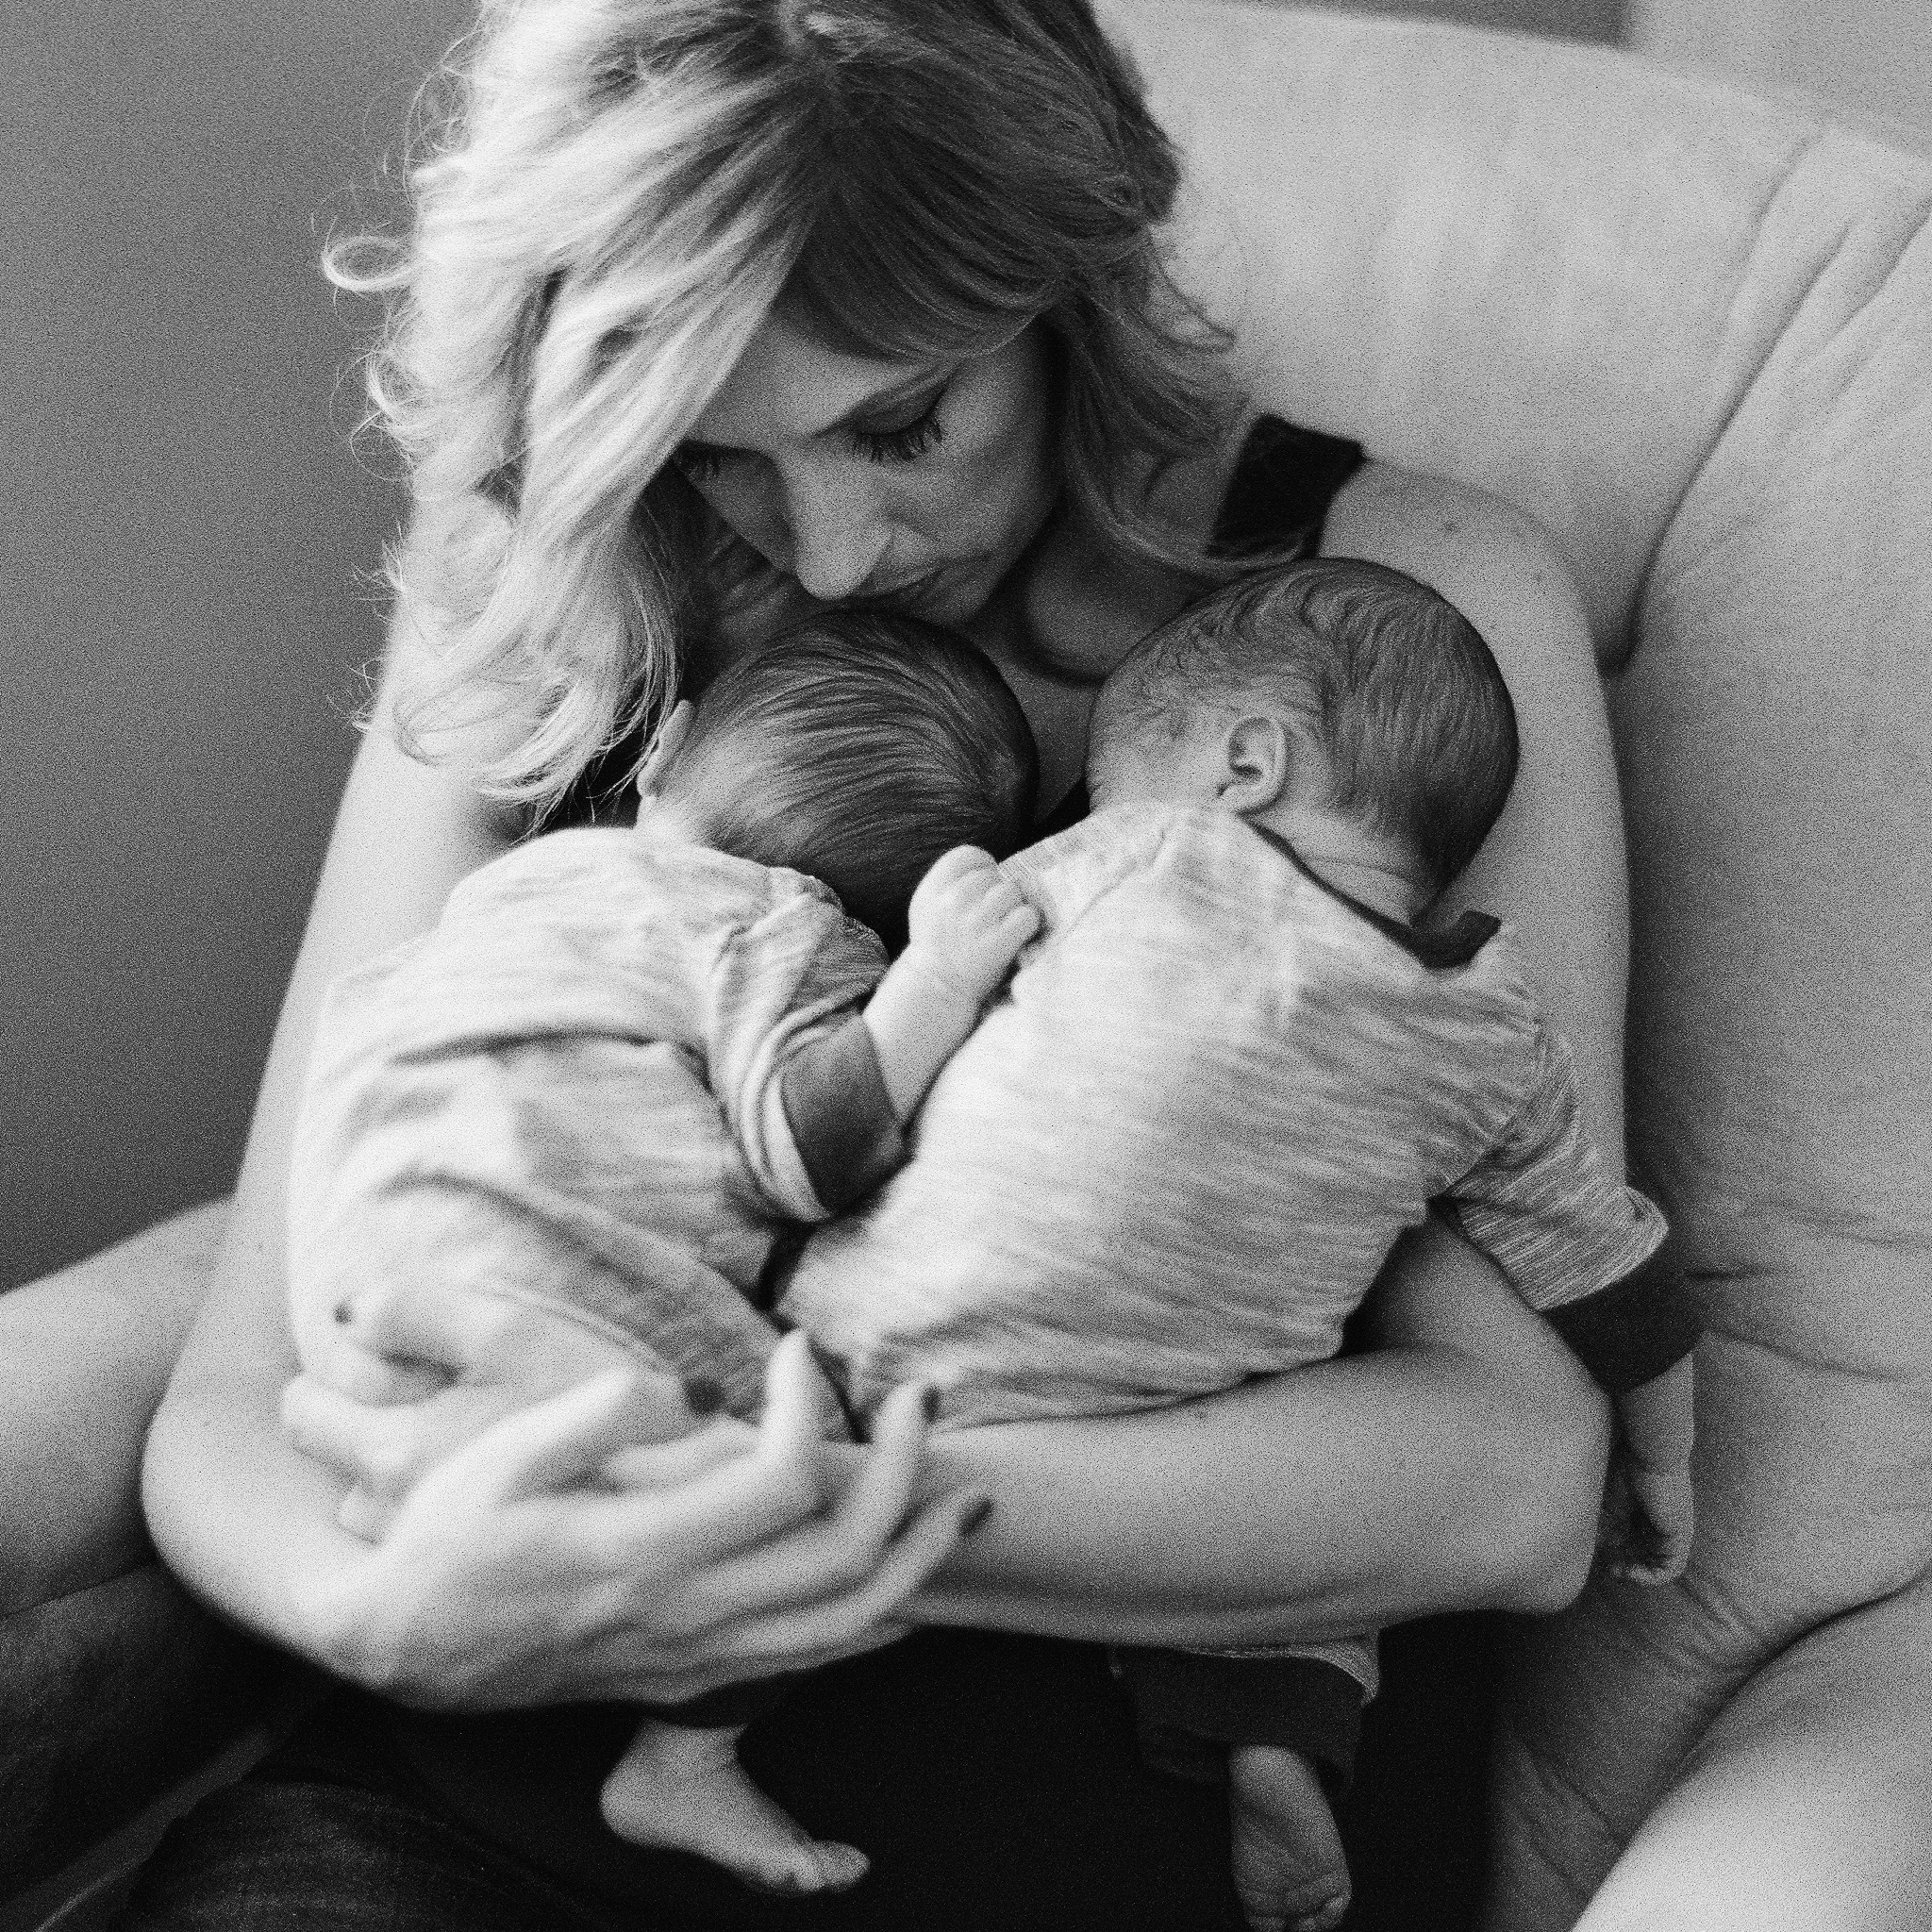 Portland Maine Black and White Film Newborn Photographer Tiffany Farley, http://tiffanyfarley.com